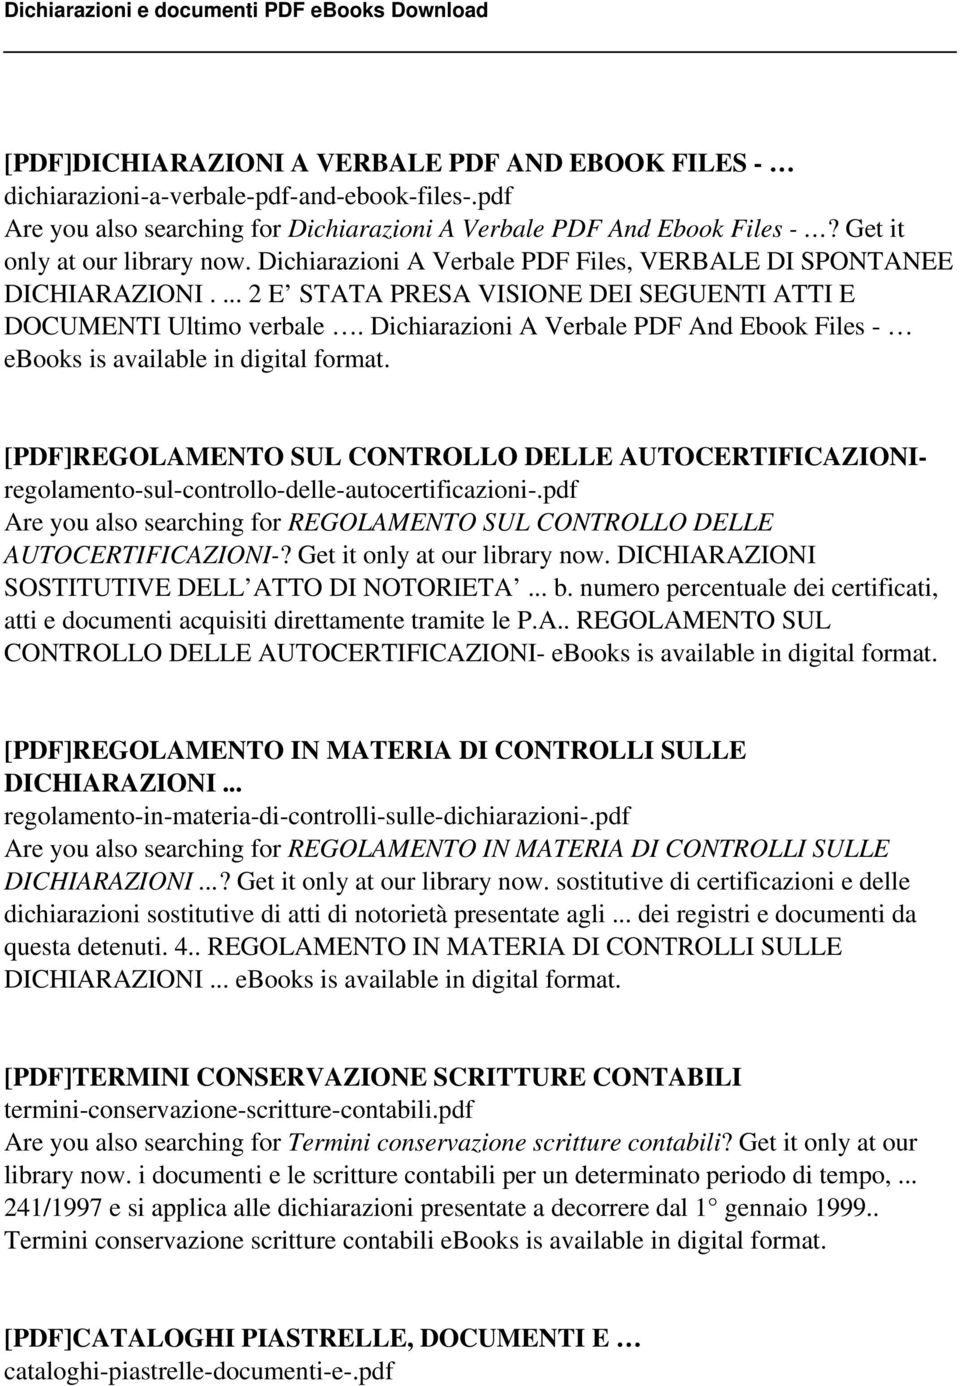 Dichiarazioni A Verbale PDF And Ebook Files - ebooks is available in digital format. [PDF]REGOLAMENTO SUL CONTROLLO DELLE AUTOCERTIFICAZIONIregolamento-sul-controllo-delle-autocertificazioni-.